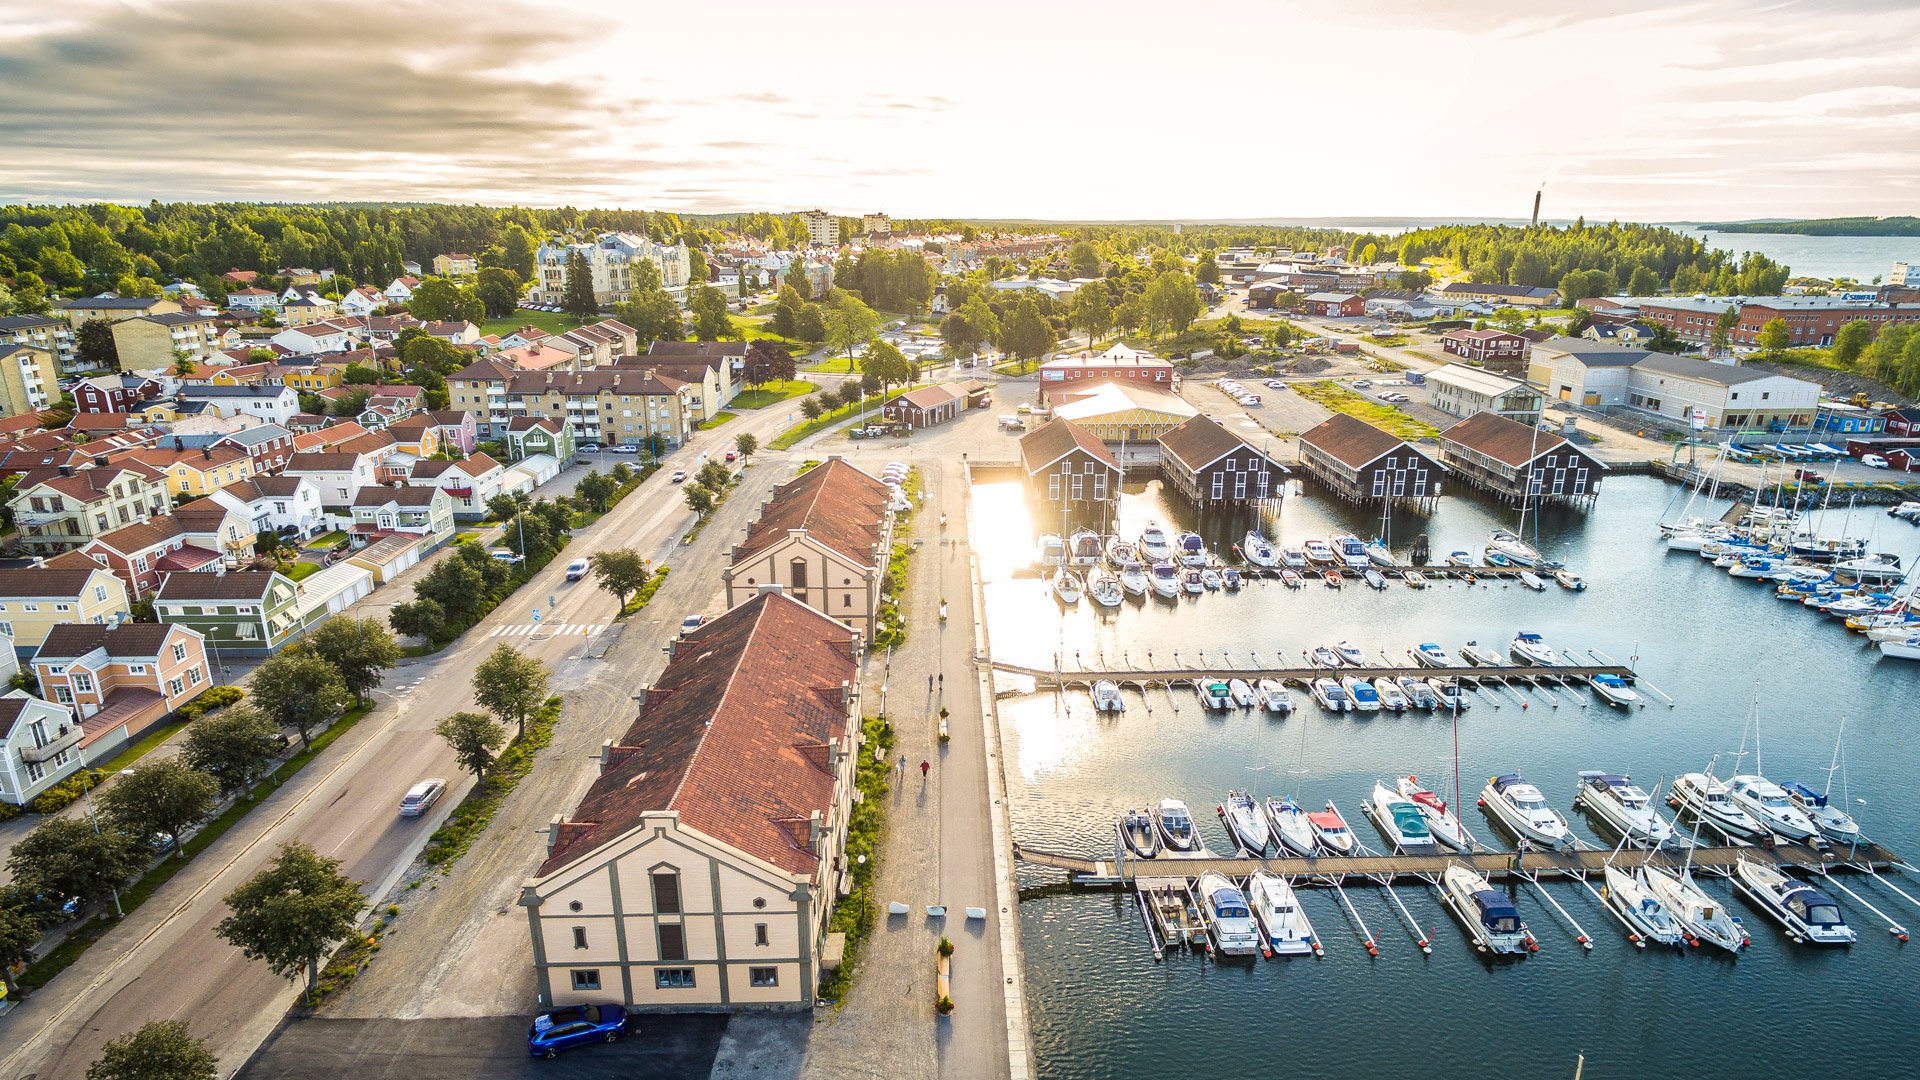 Flygfoto - Vyer från luften i Hudiksvall, Söderhamn och Hälsingland